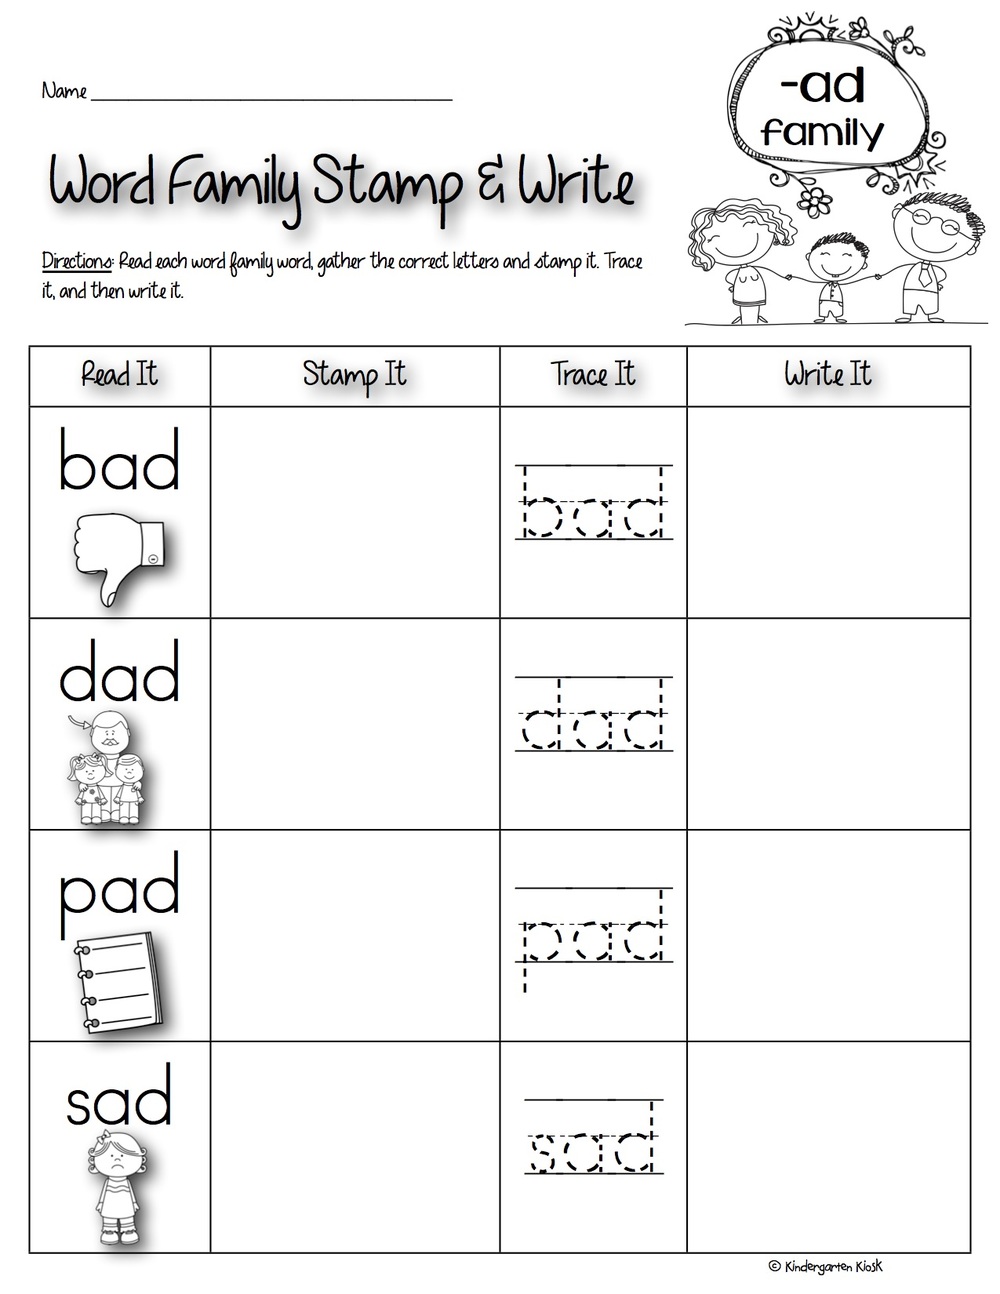 Phonics Prep: Word Family Worksheets — Kindergarten Kiosk